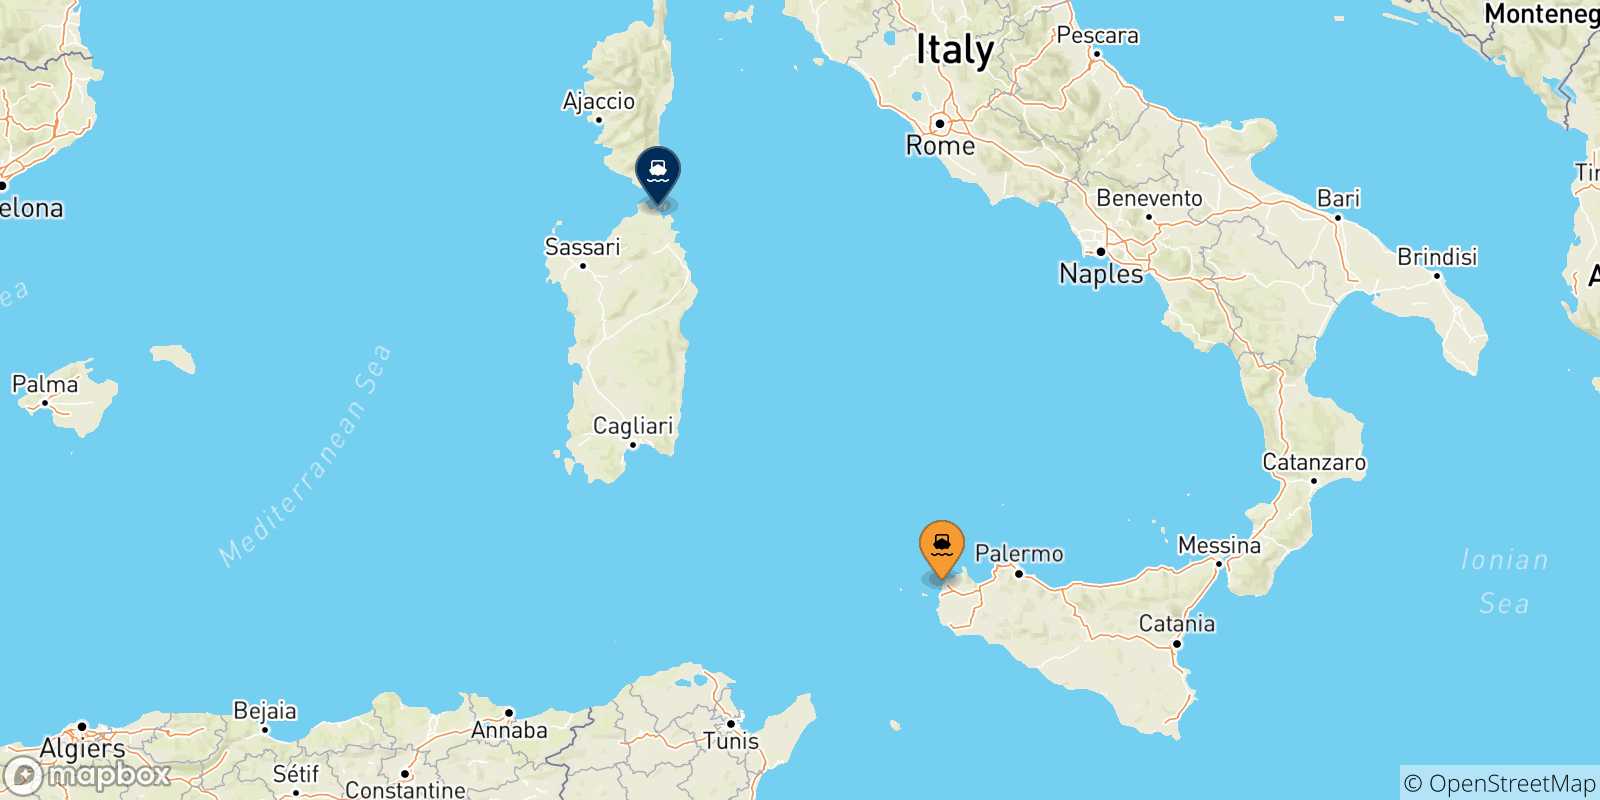 Mappa delle possibili rotte tra Trapani e la Sardegna